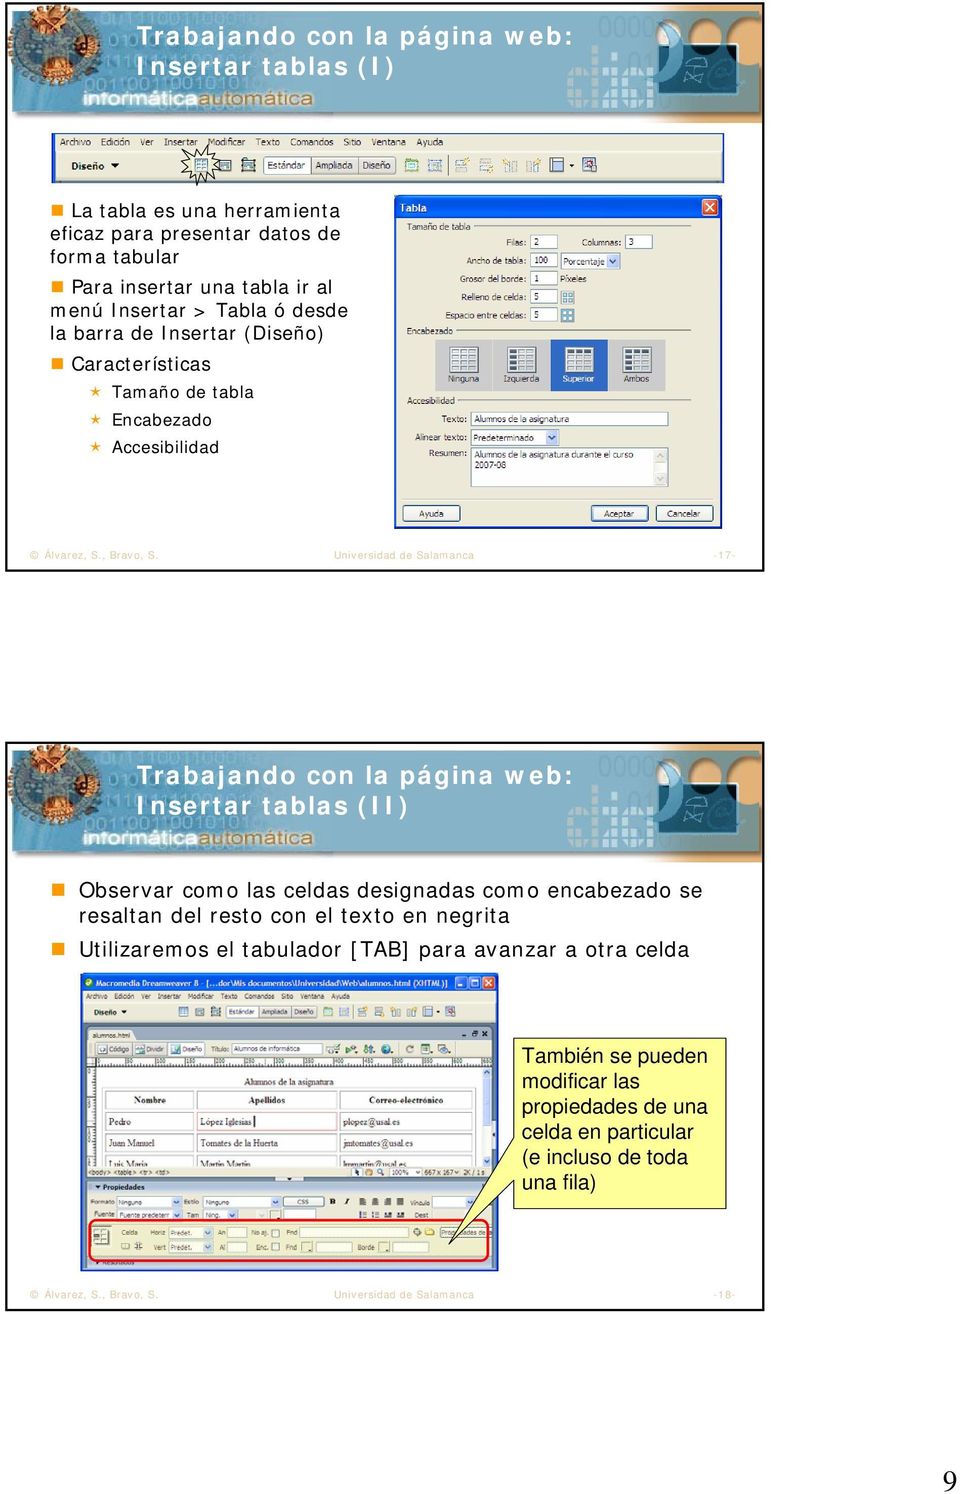 Universidad de Salamanca -17- Trabajando con la página web: Insertar tablas (II) Observar como las celdas designadas como encabezado se resaltan del resto con el texto en